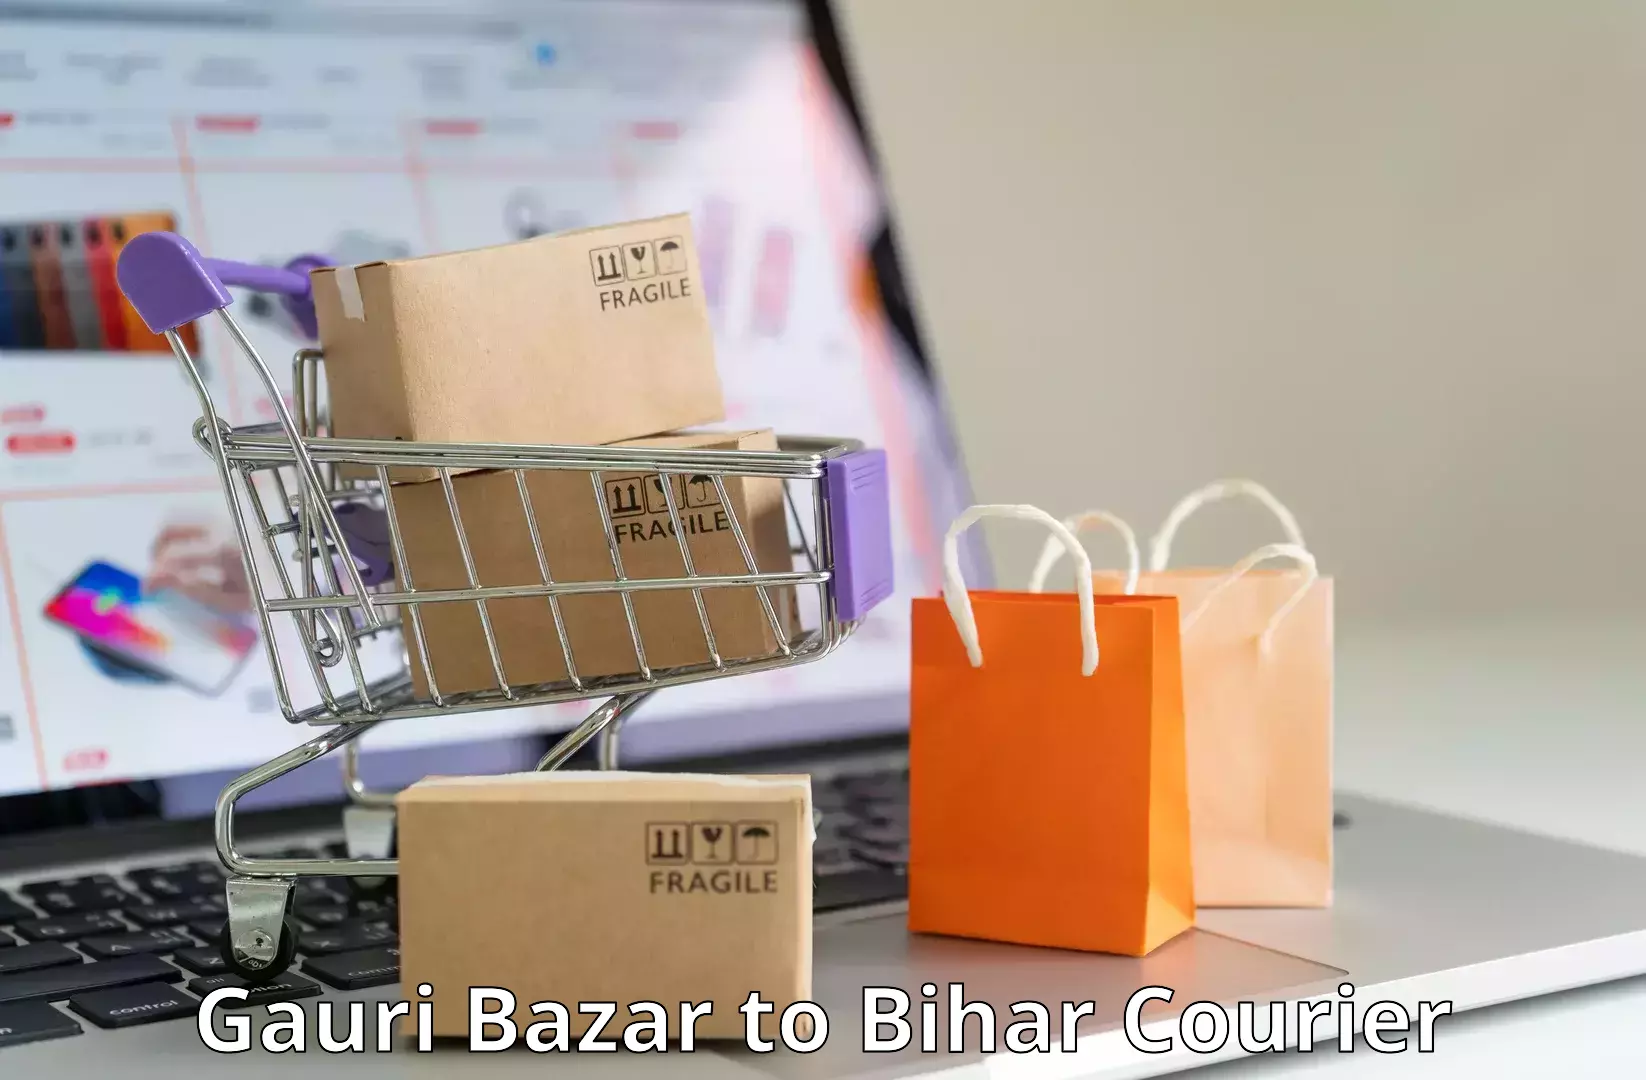 Doorstep delivery service Gauri Bazar to Supaul